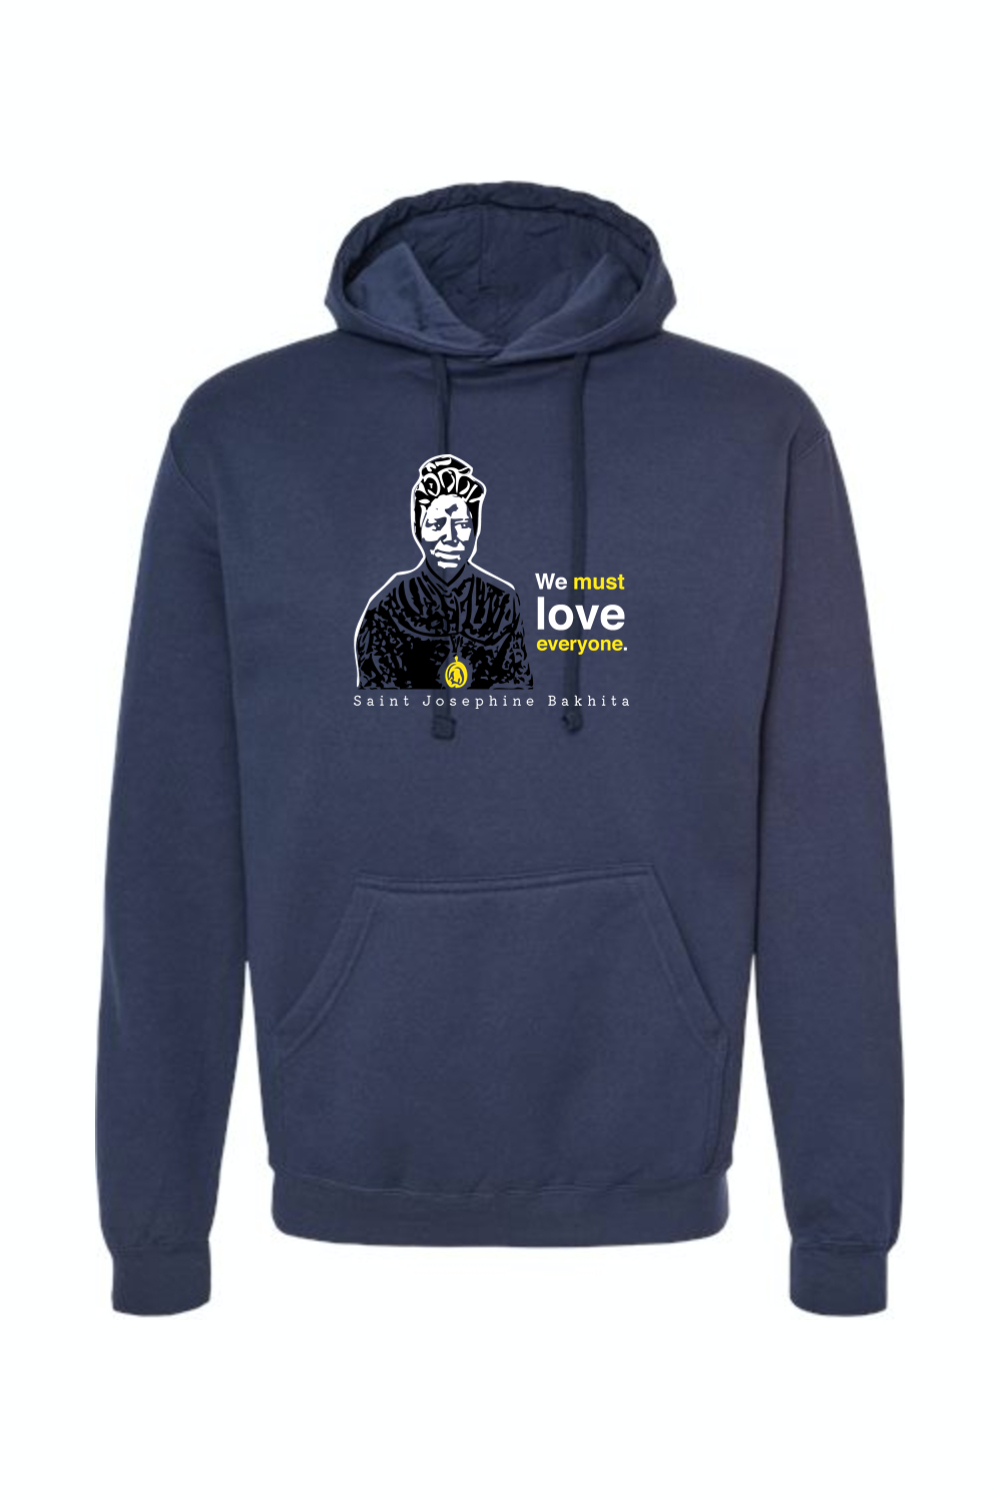 We Must Love Everyone - St. Josephine Bakhita Hoodie Sweatshirt